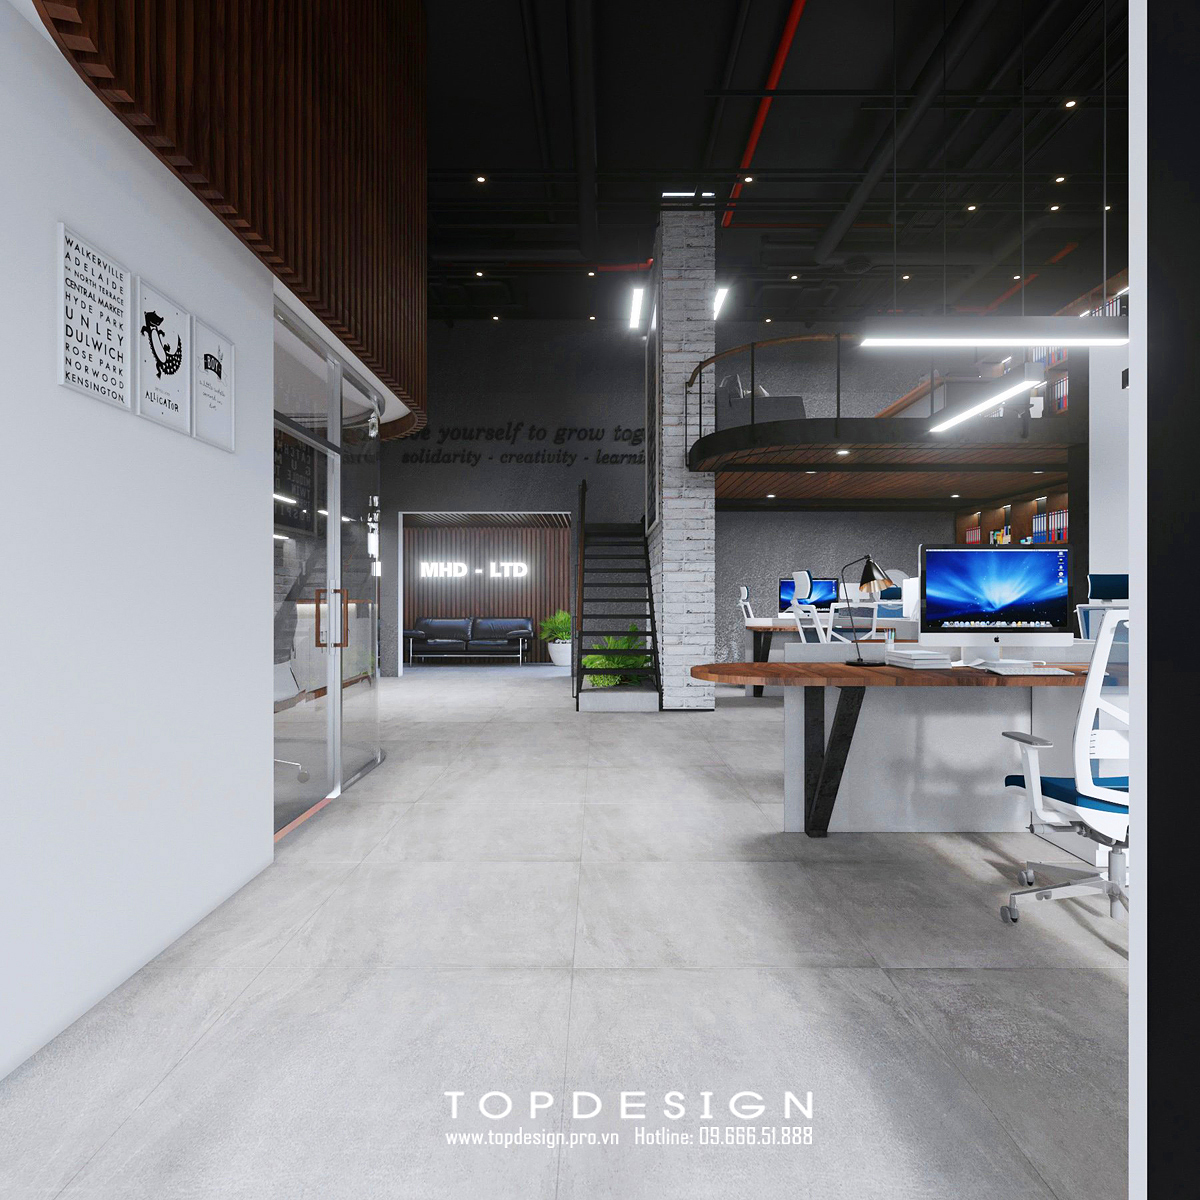 TOPDESIGN_Thiết kế nội thất văn phòng MHD_14